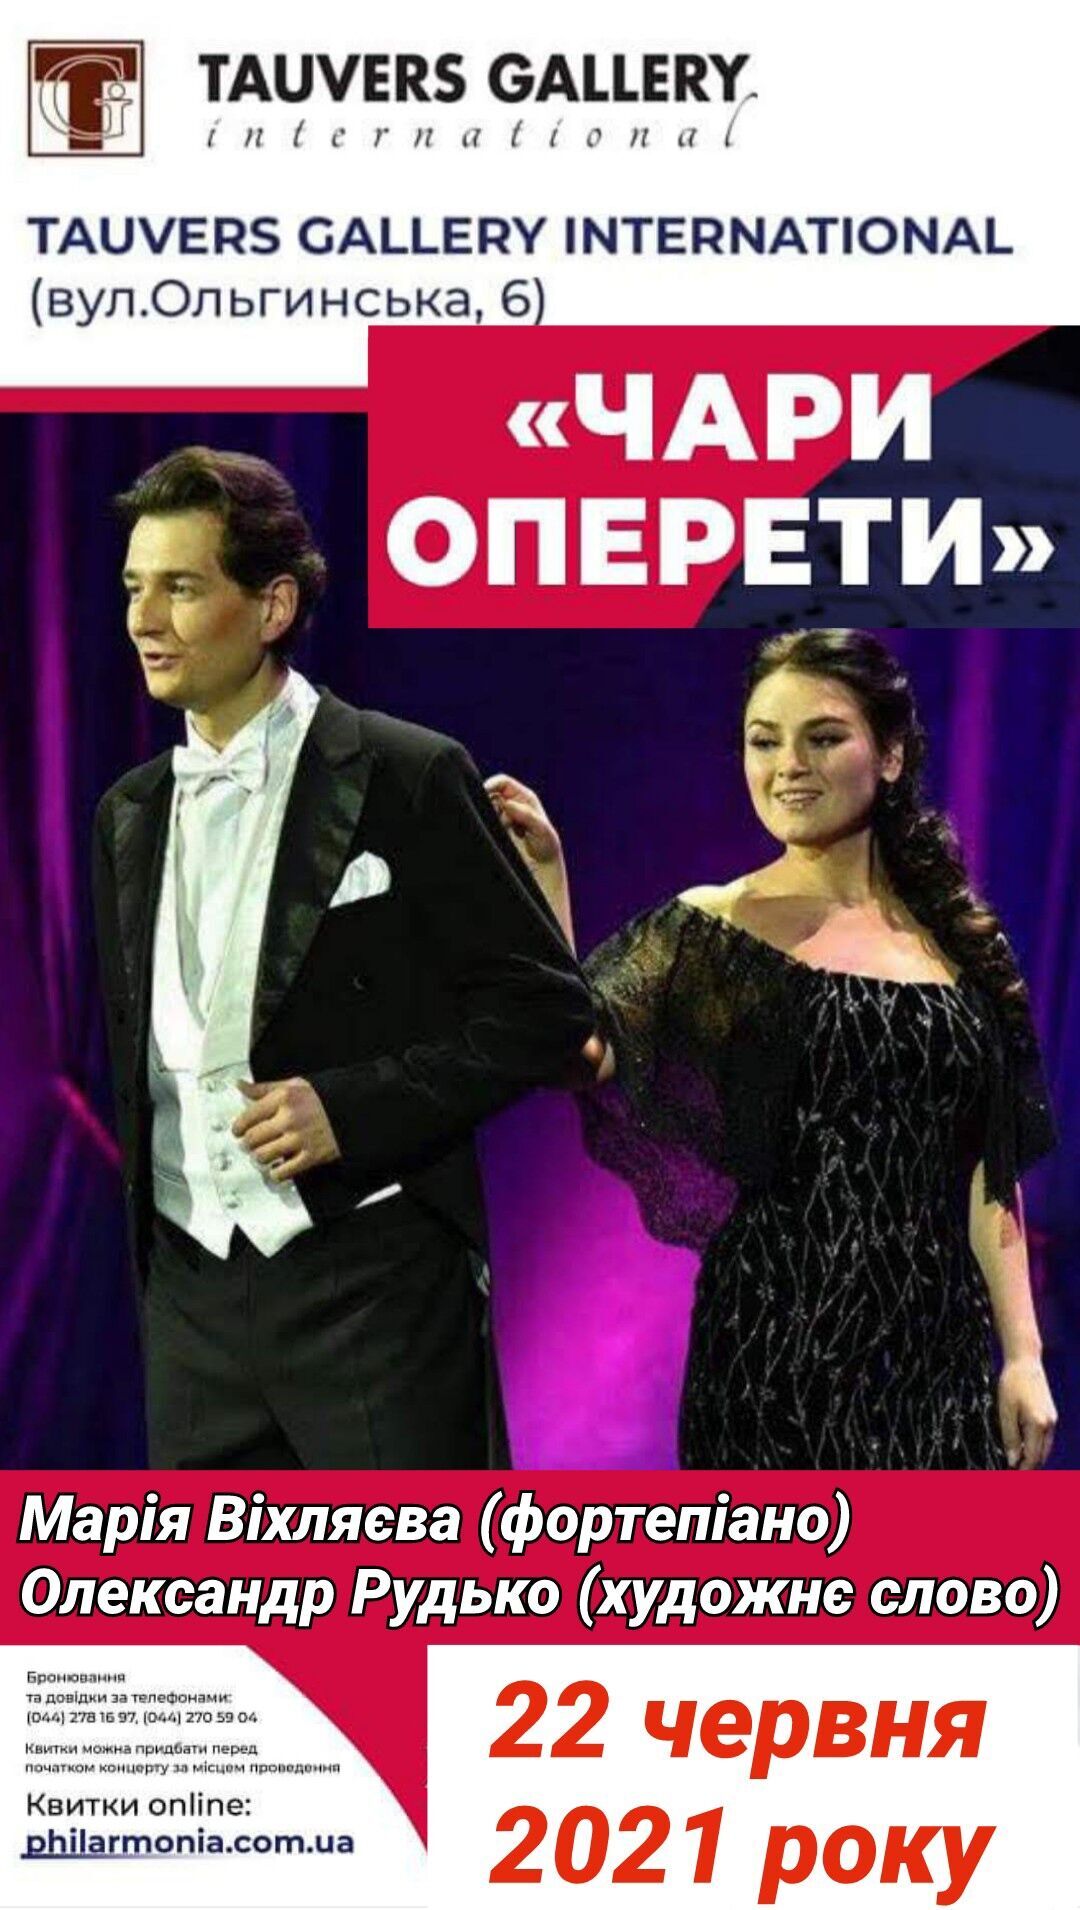 22 червня відбудеться останній у цьому сезоні концерт "Чари оперети"